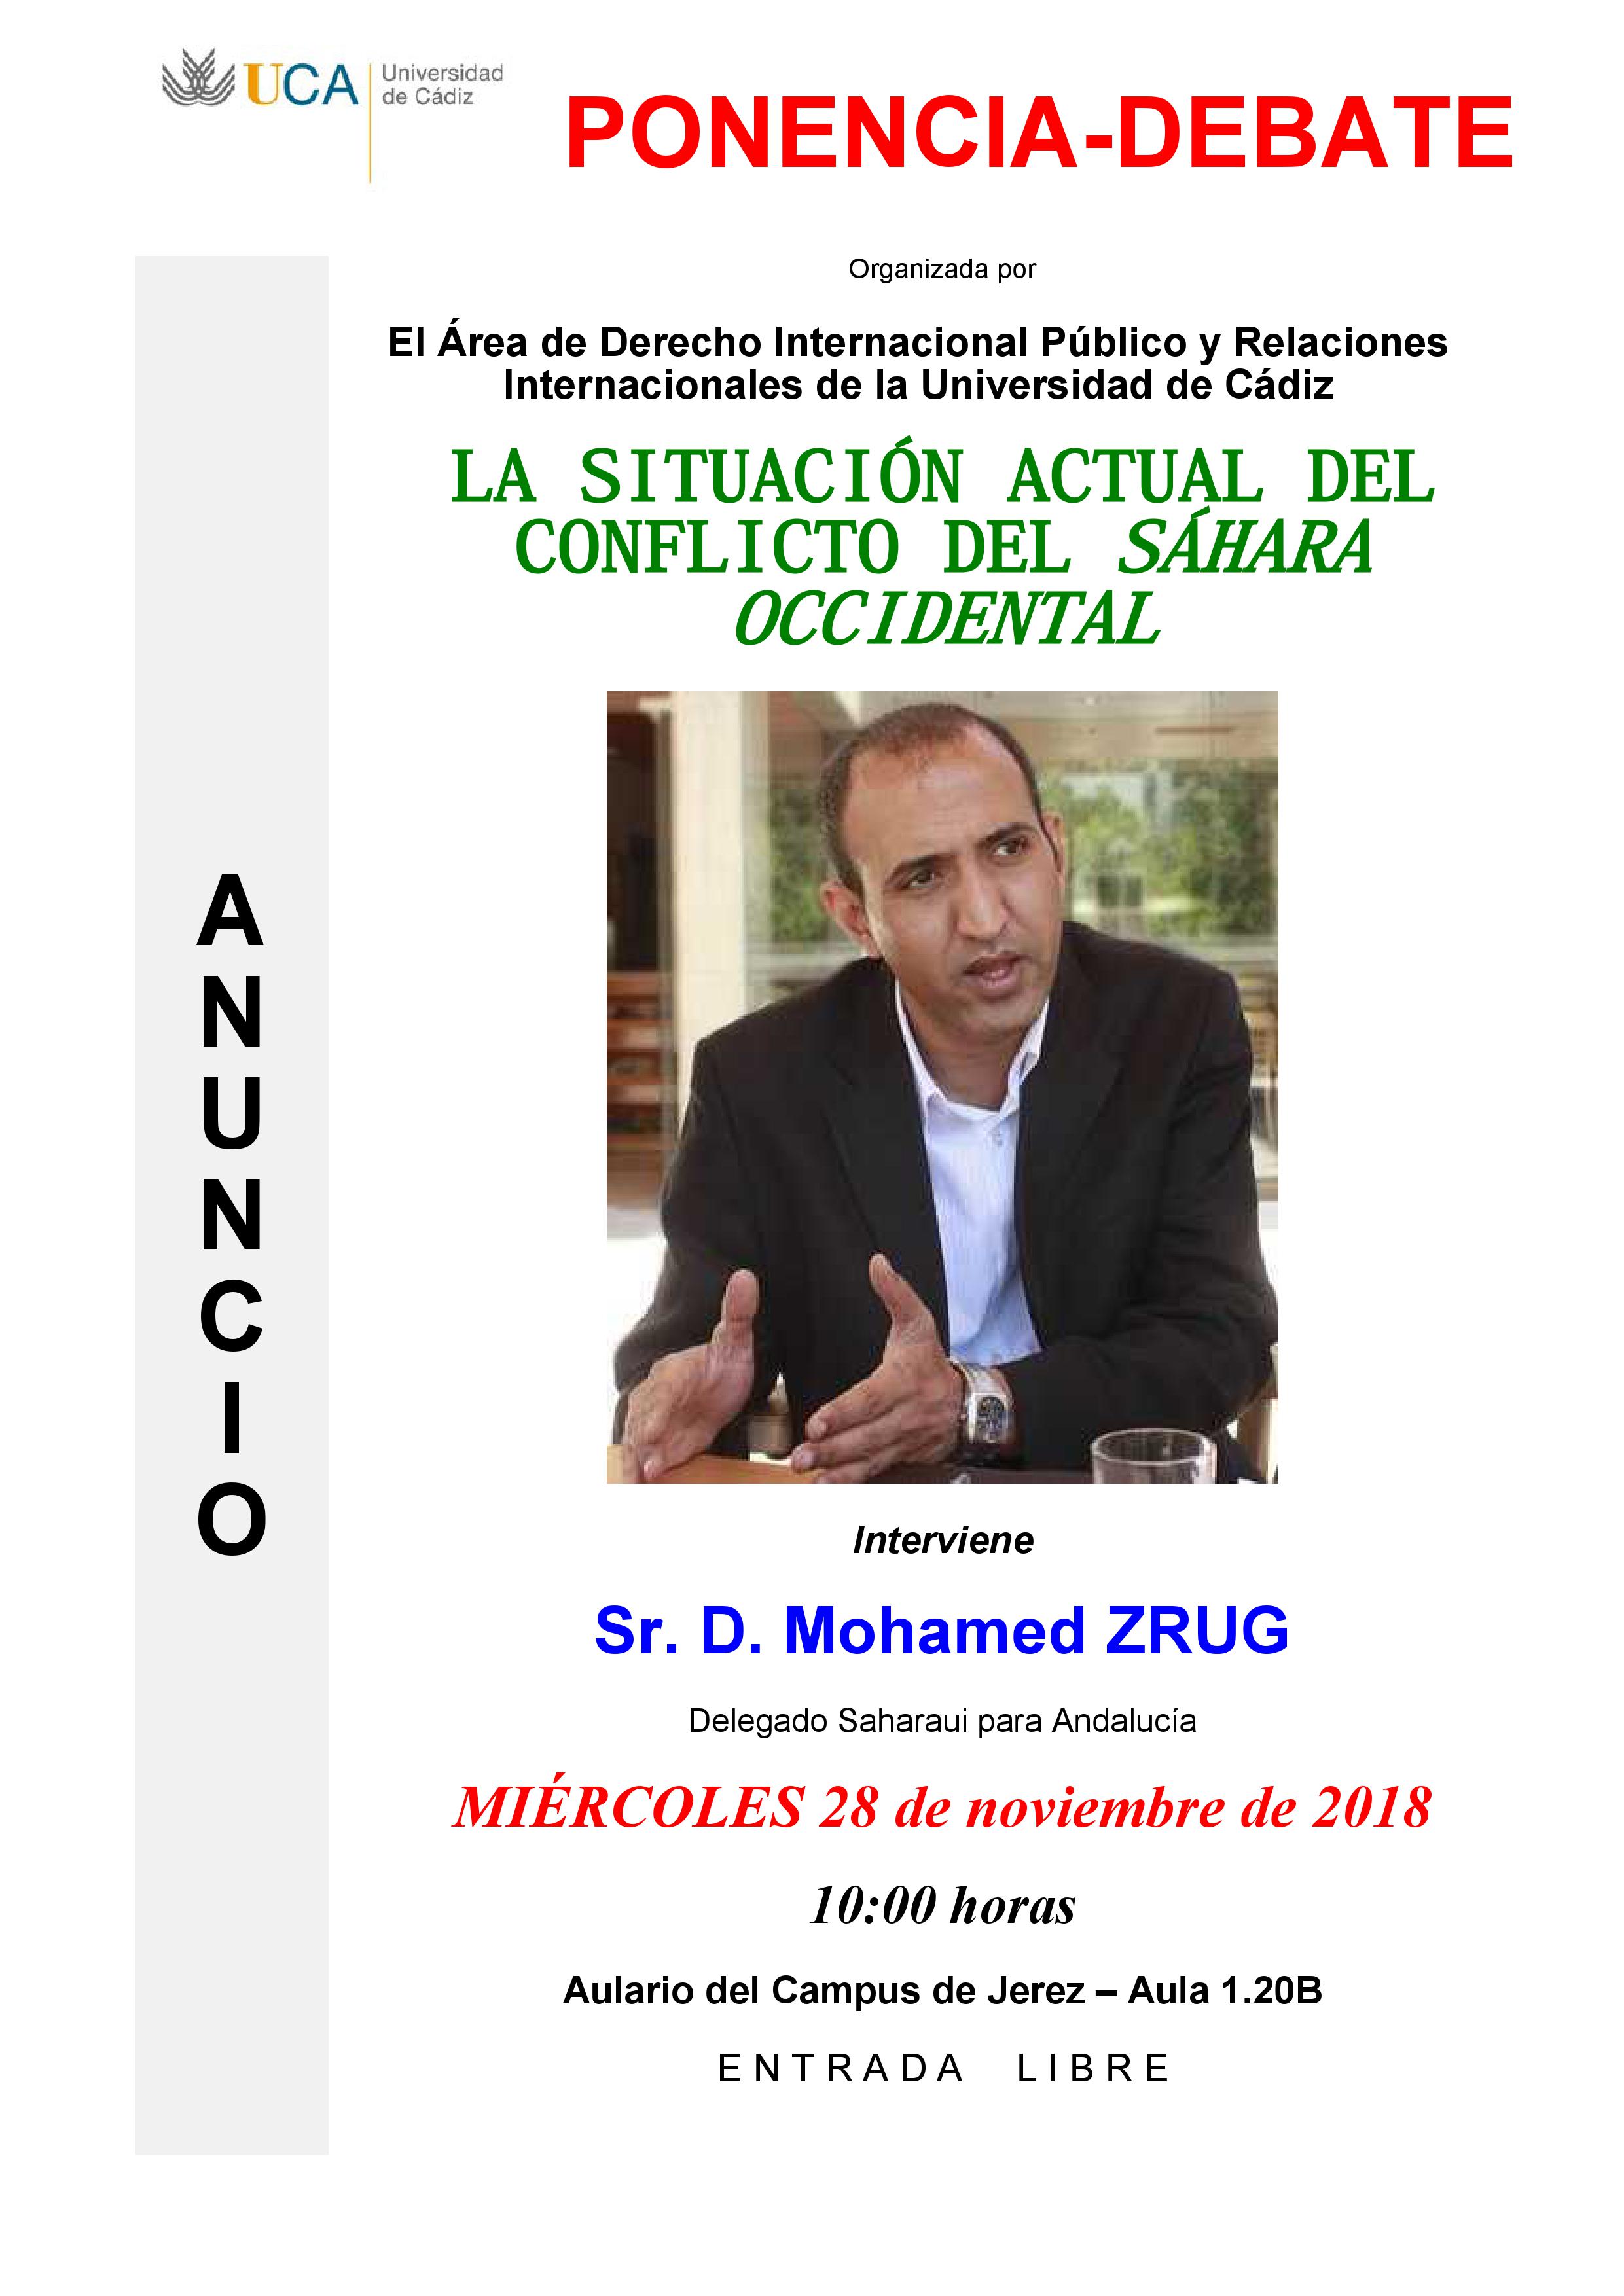 El 28 de noviembre se celebra la ponencia sobre “La situación actual del conflicto del Sáhara Occidental” en el Campus de Jerez